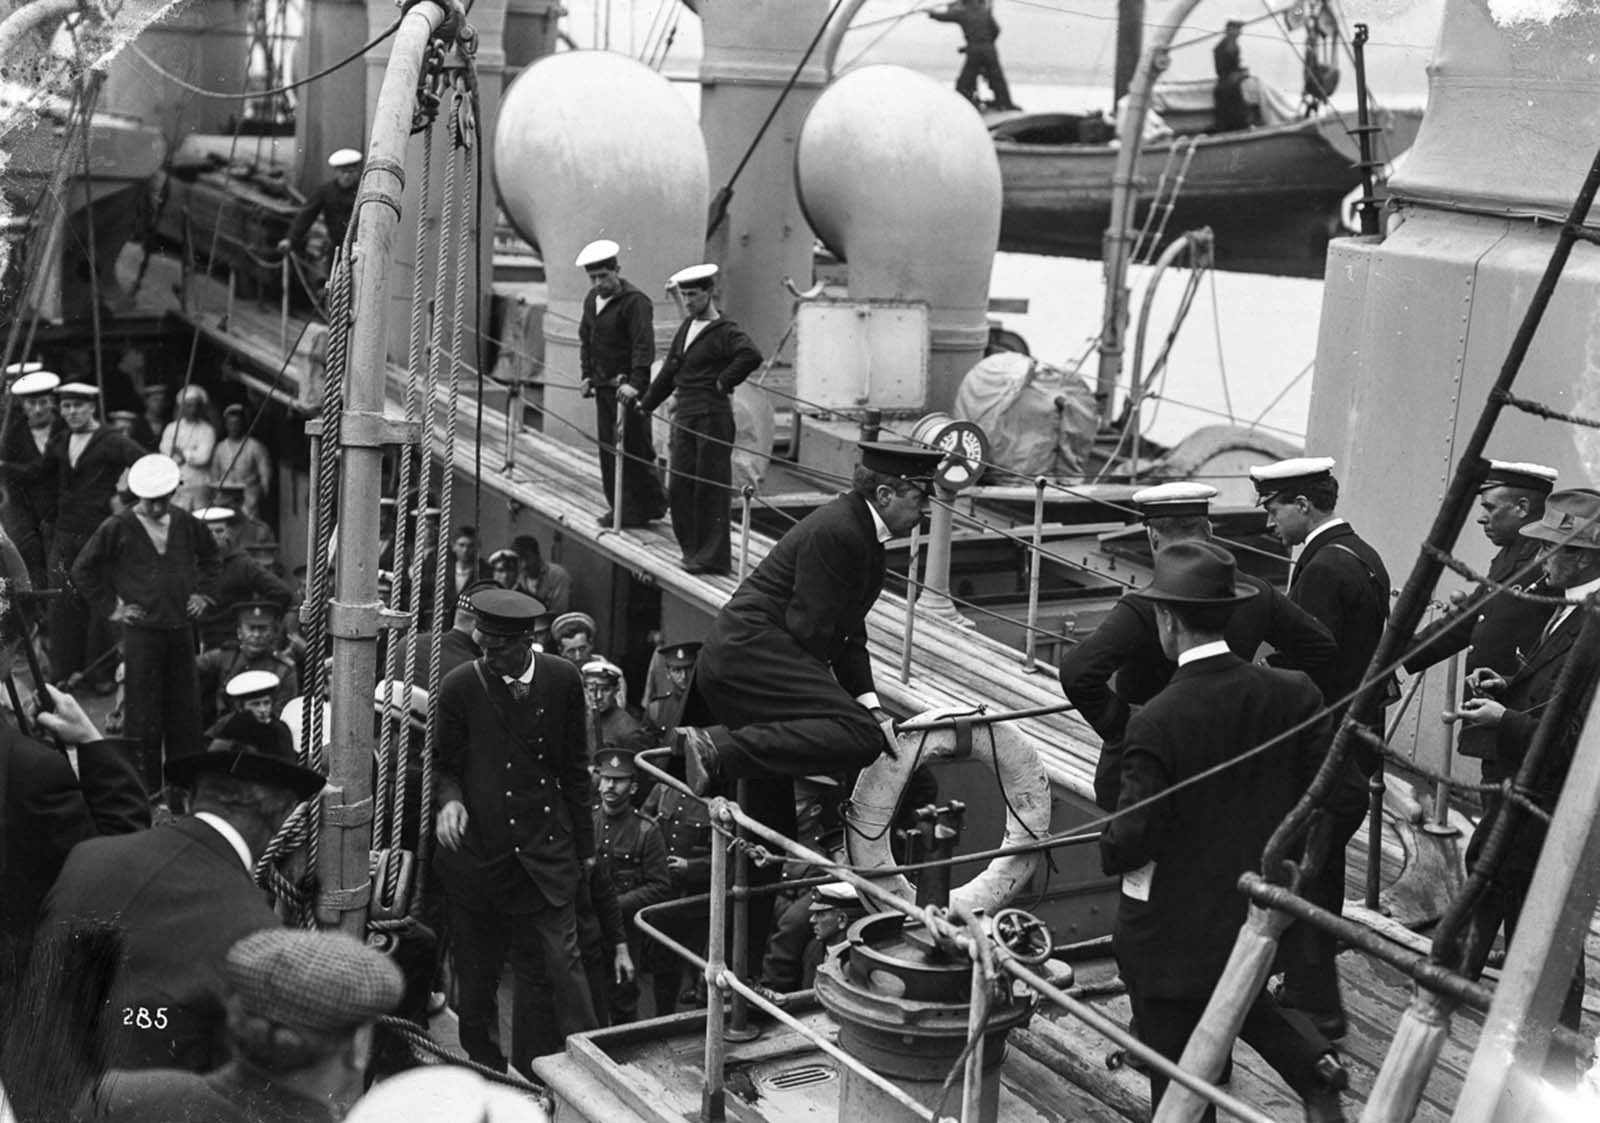 L'incident du Komagata Maru qui a contesté les lois canadiennes sur l'immigration, 1914